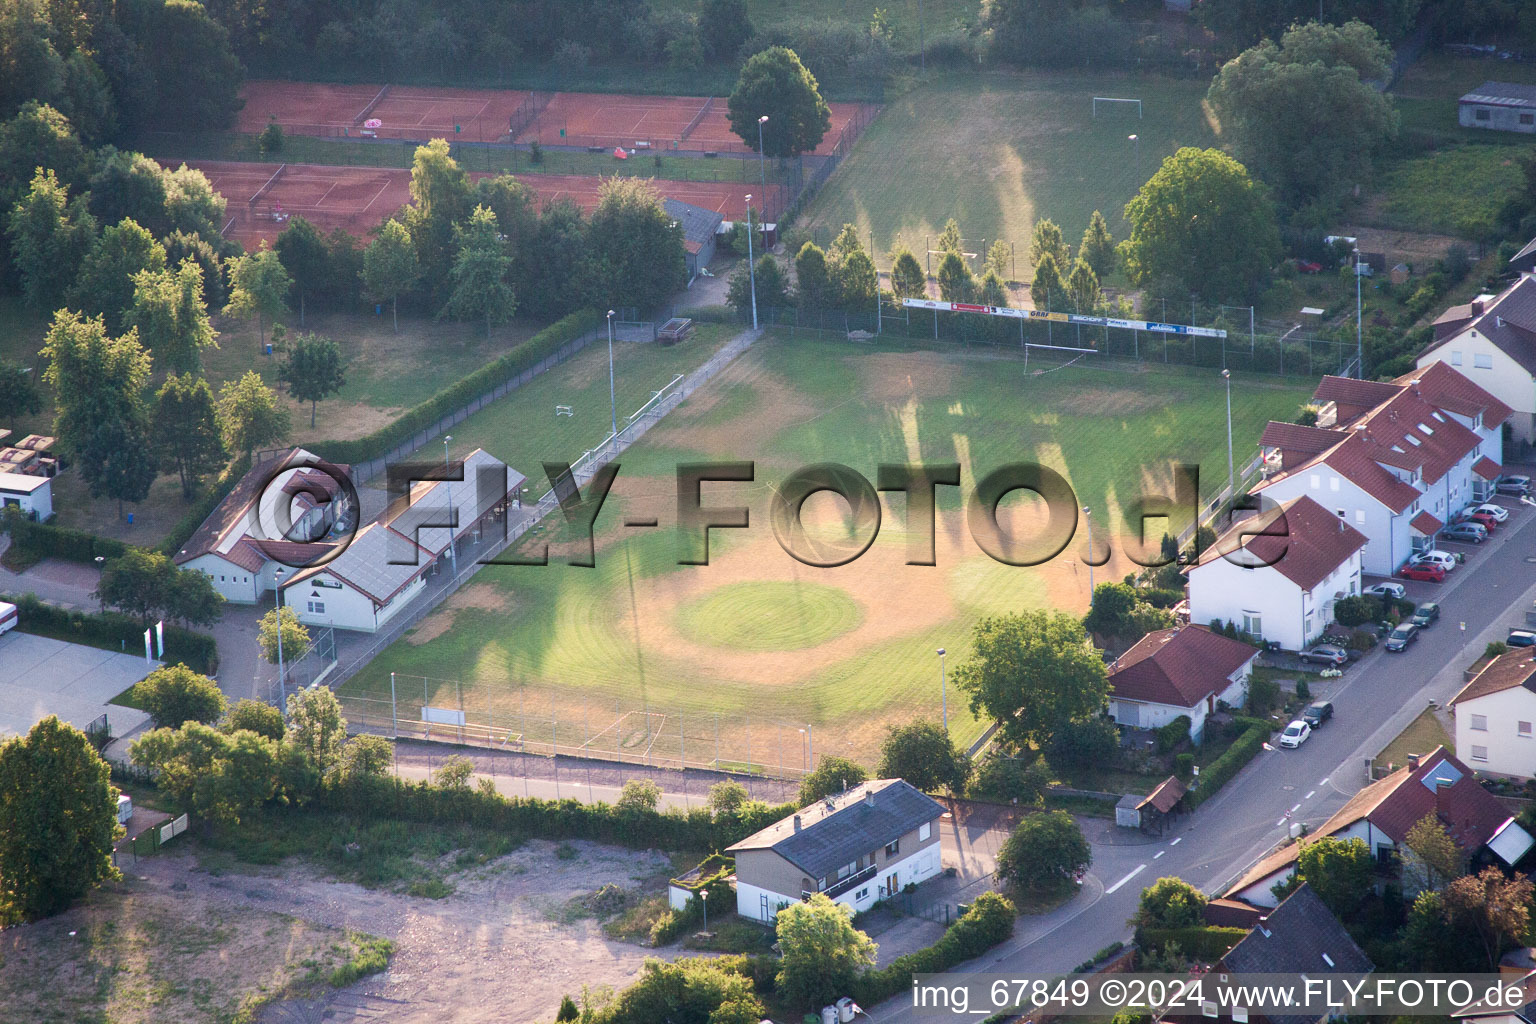 Sports ground in the district Appenhofen in Billigheim-Ingenheim in the state Rhineland-Palatinate, Germany